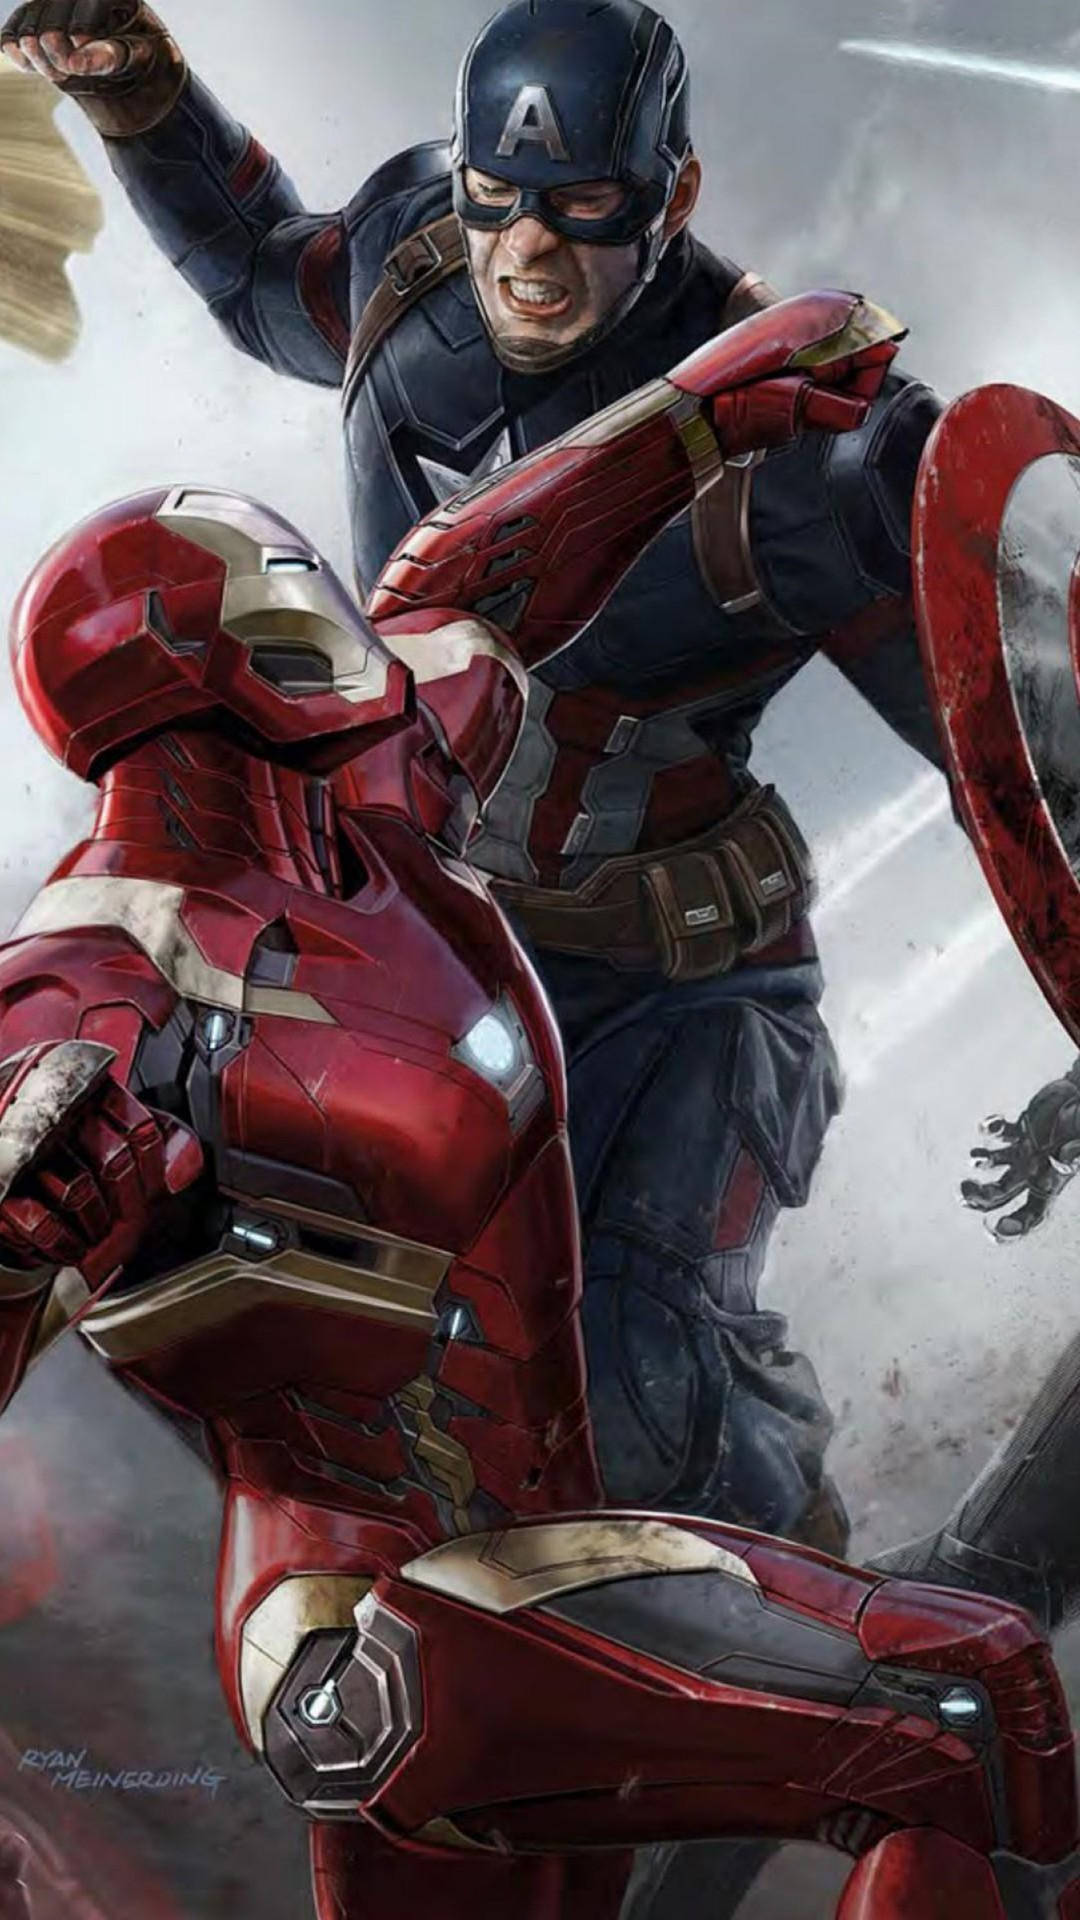 Avengersinfinity War - Fondo De Pantalla En Alta Definición. Fondo de pantalla